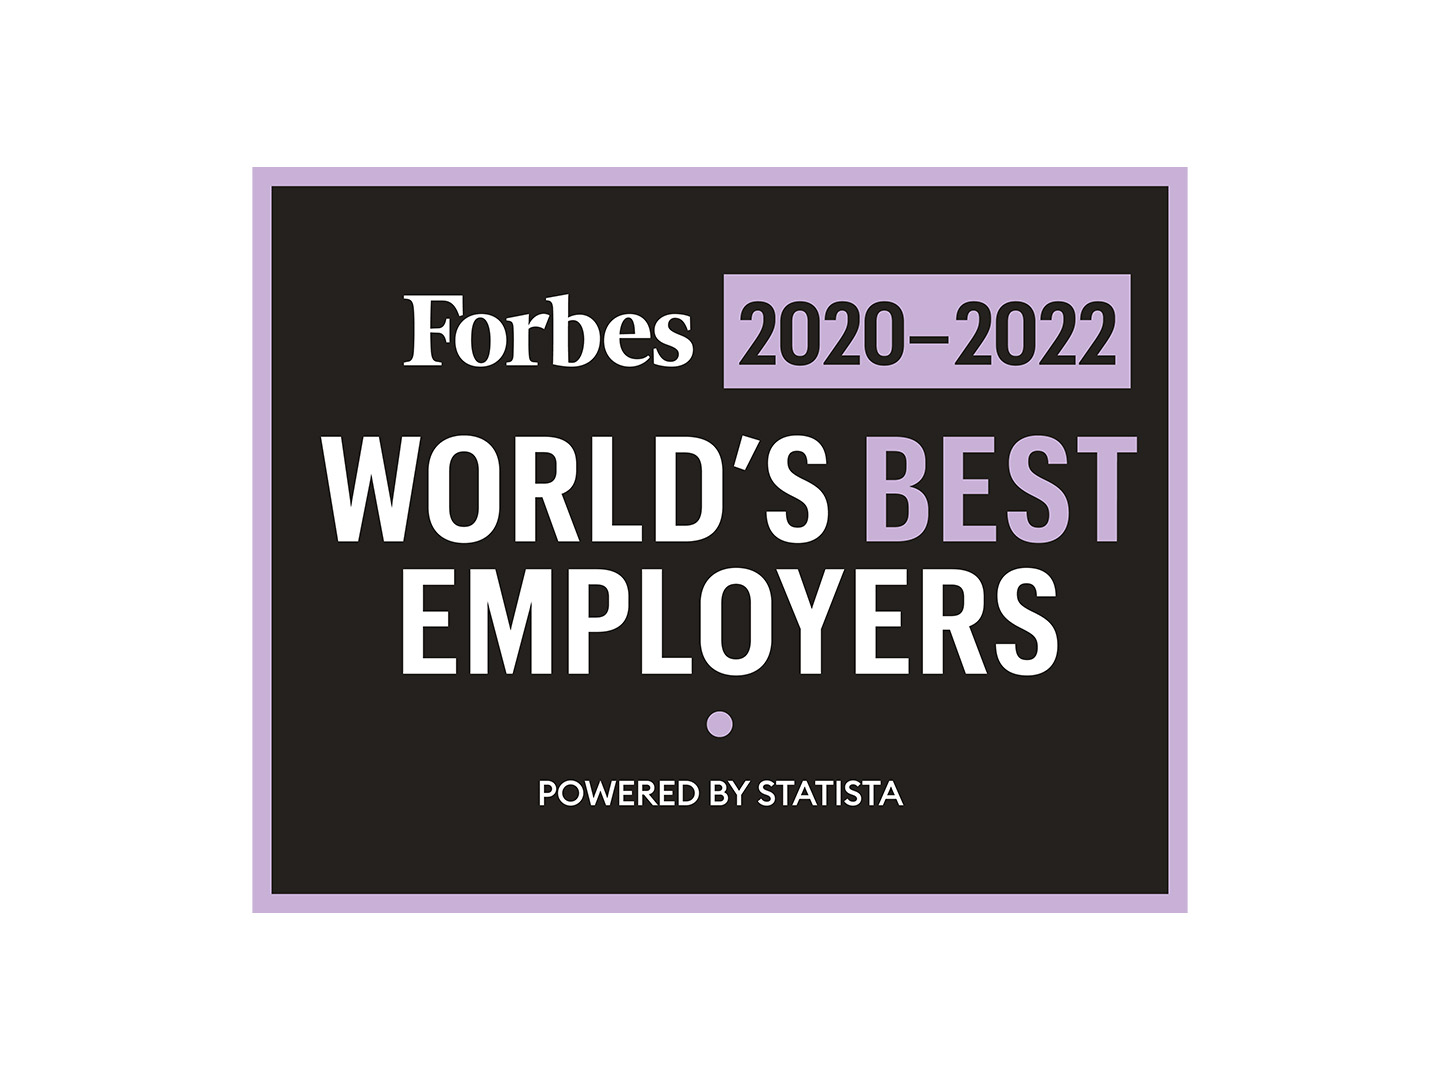 World's Best Employer 2020-2022